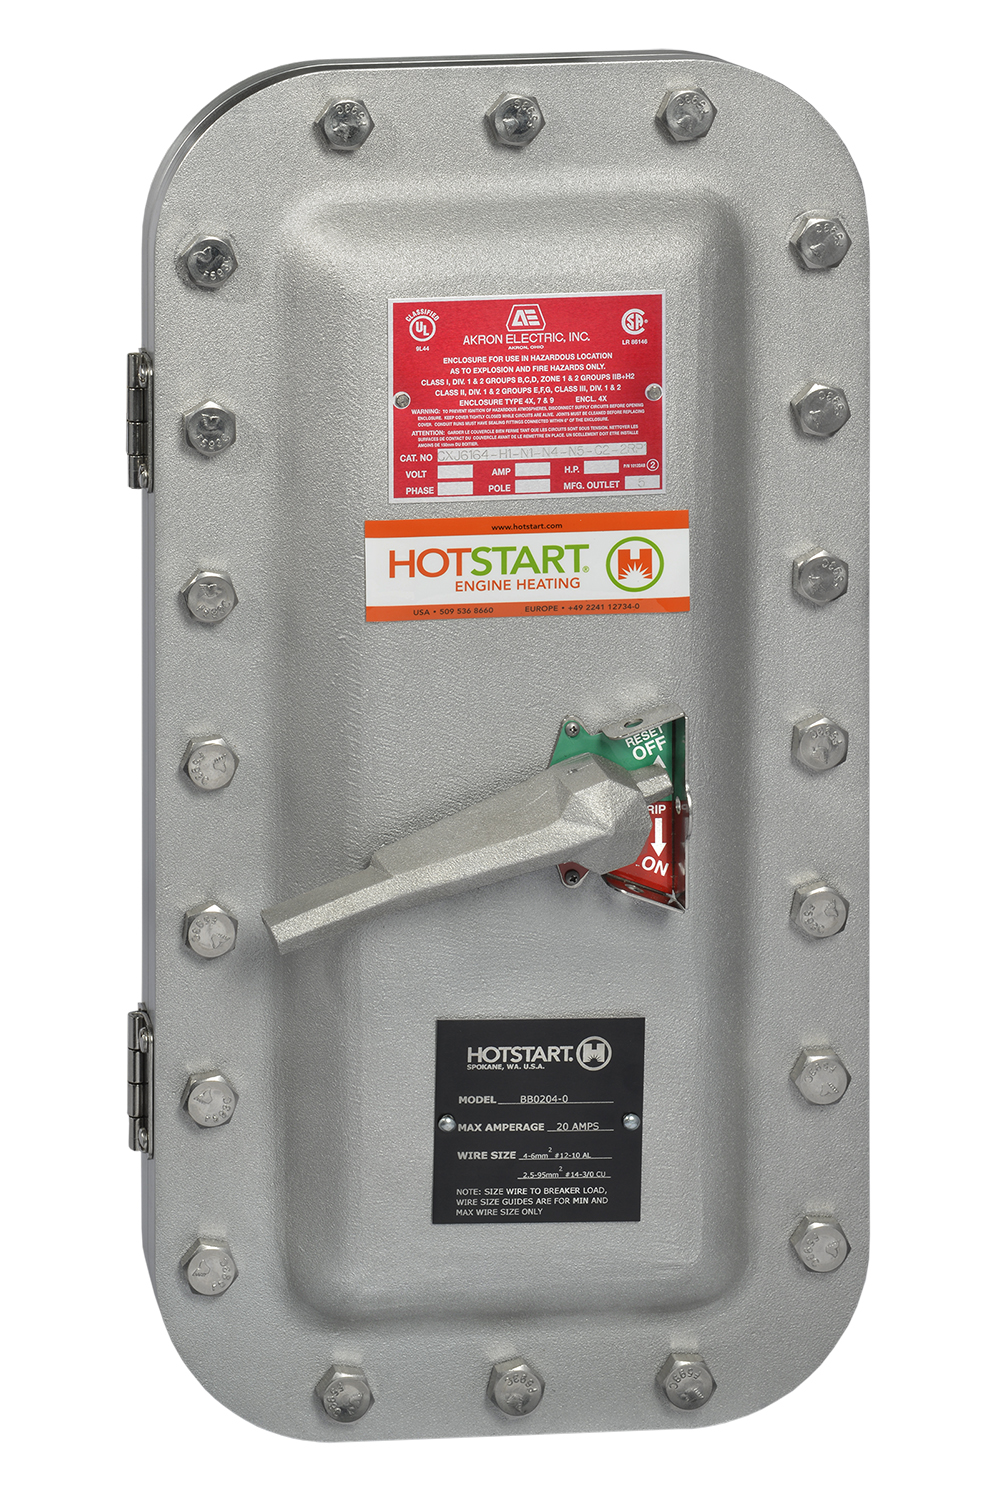 防爆仕様も可能なブレーカーボックスは、遮断と過電流保護機能を搭載しているため、危険場所で使用される石油・ガス市場向けのヒーティングシステムと組み合わせて使用できます。